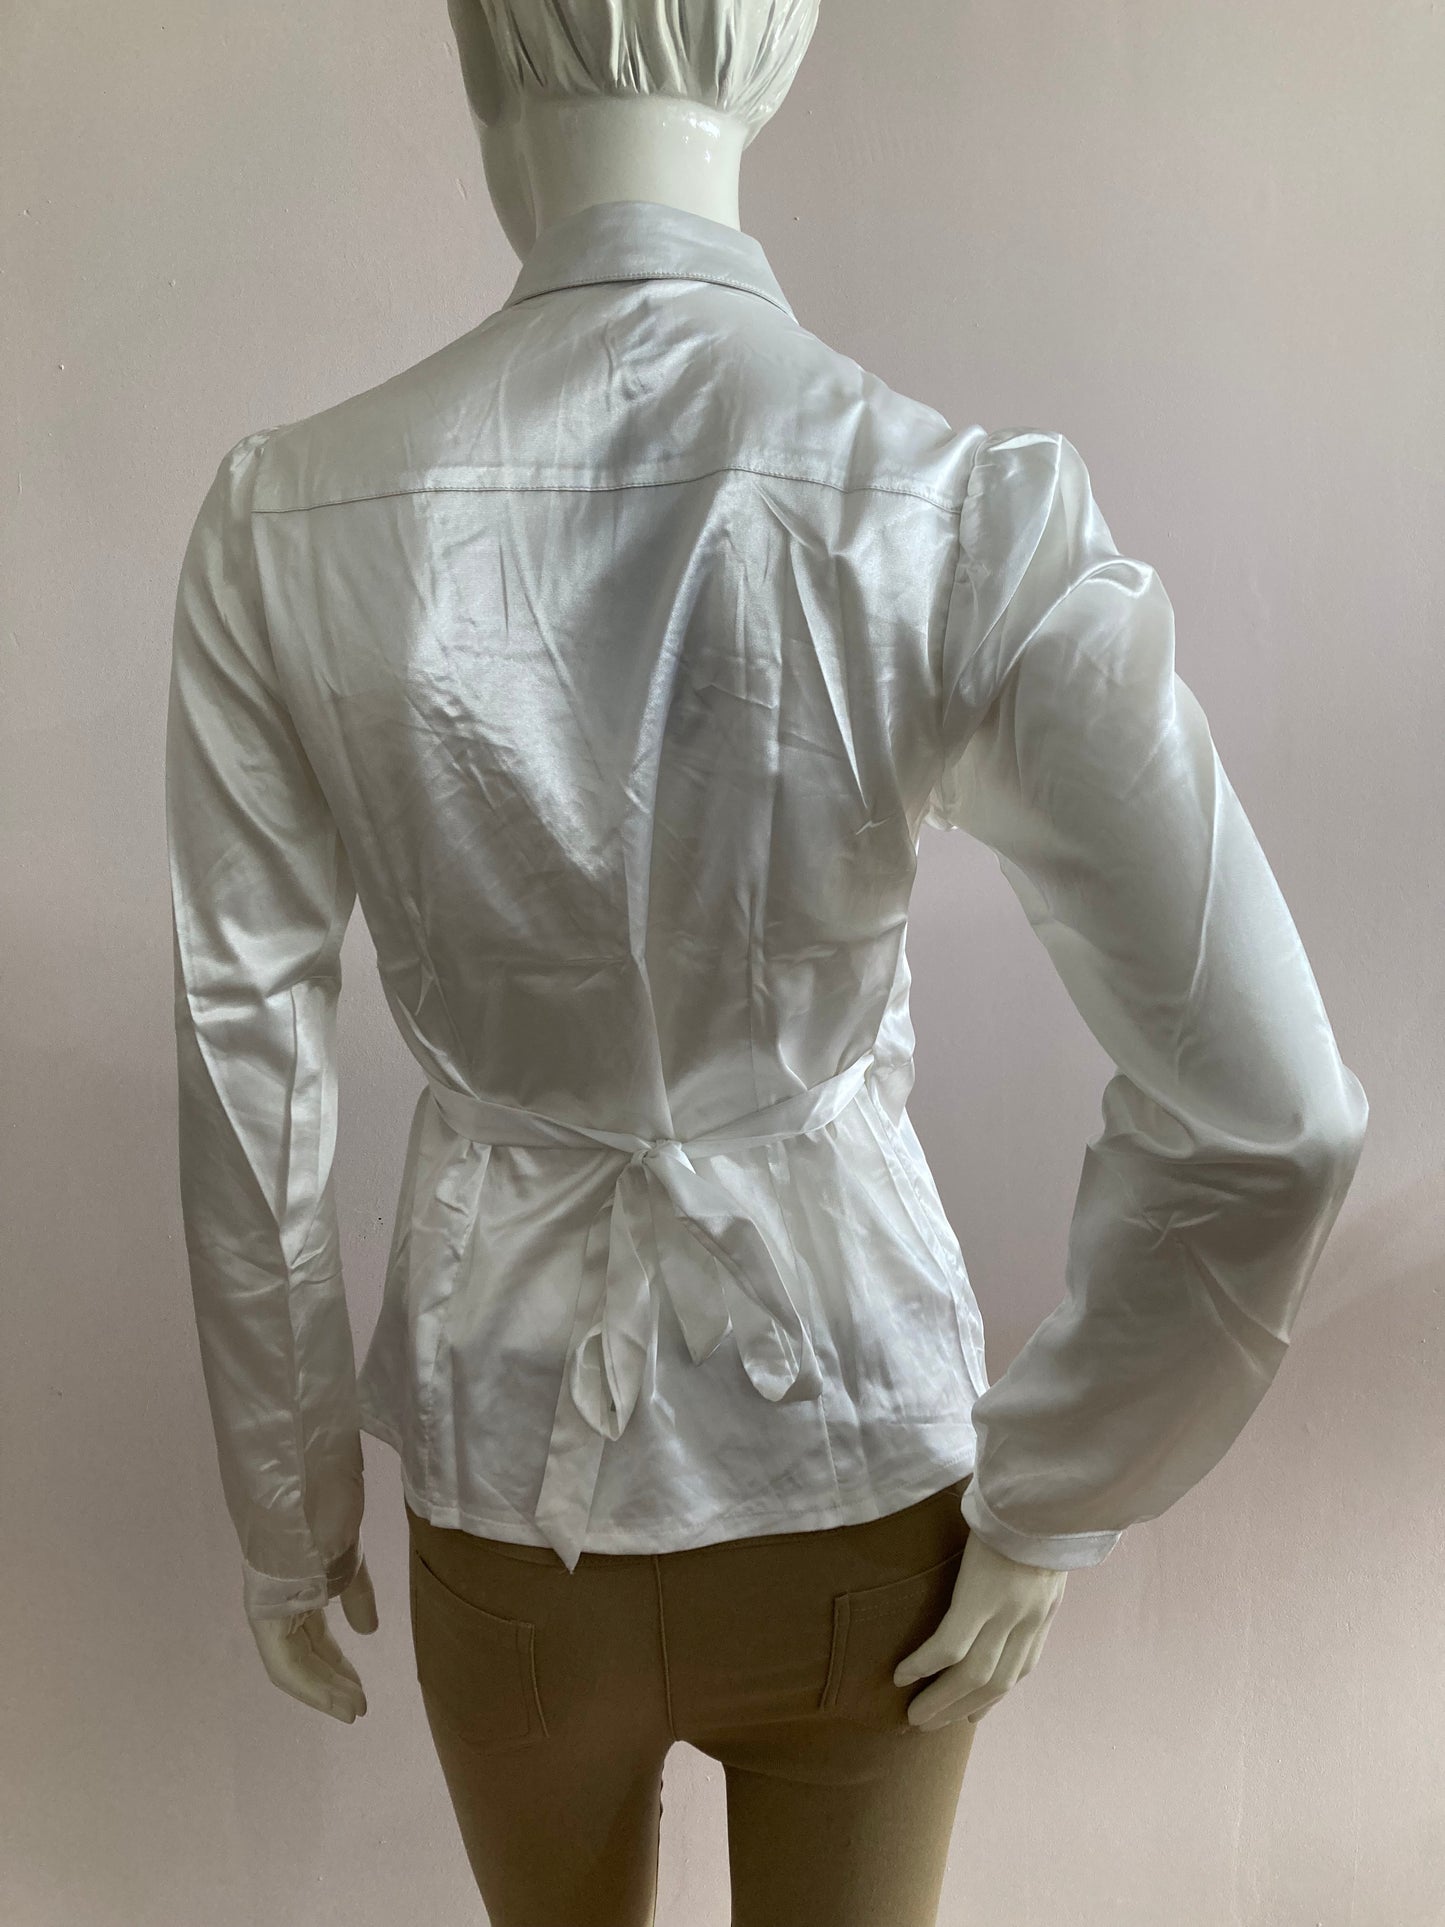 White satin wrap-style blouse